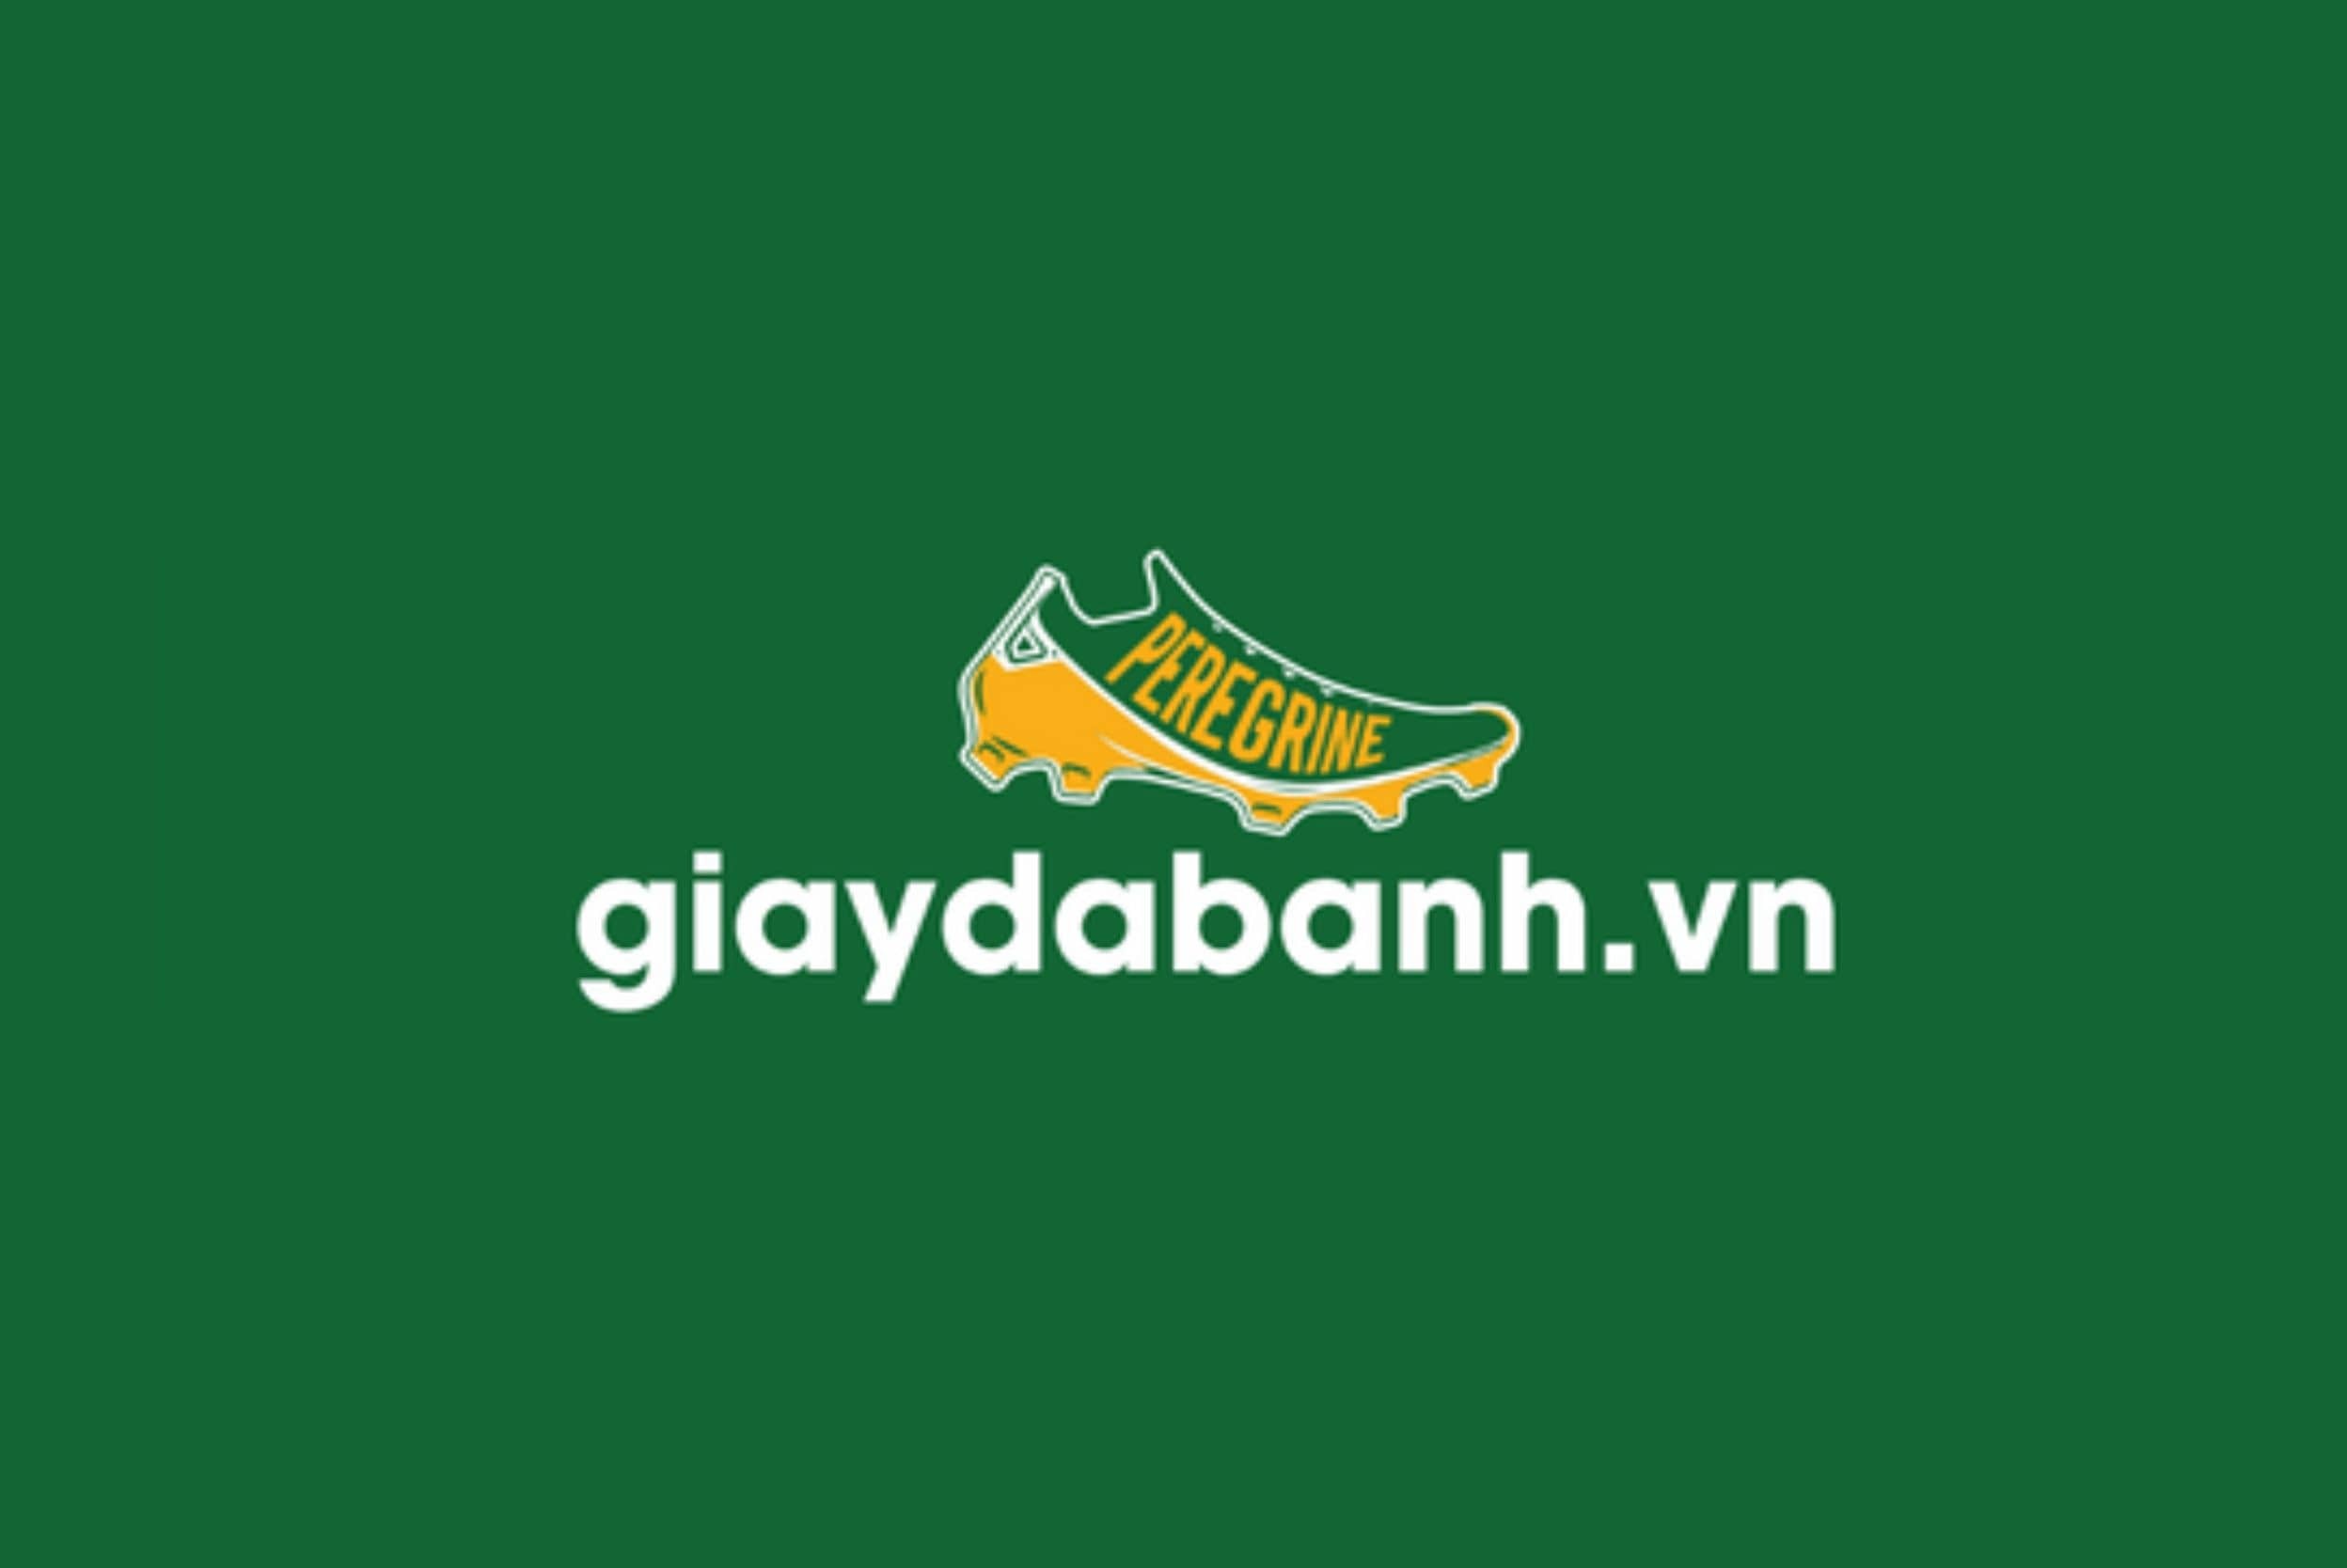 giaydabanh-logo